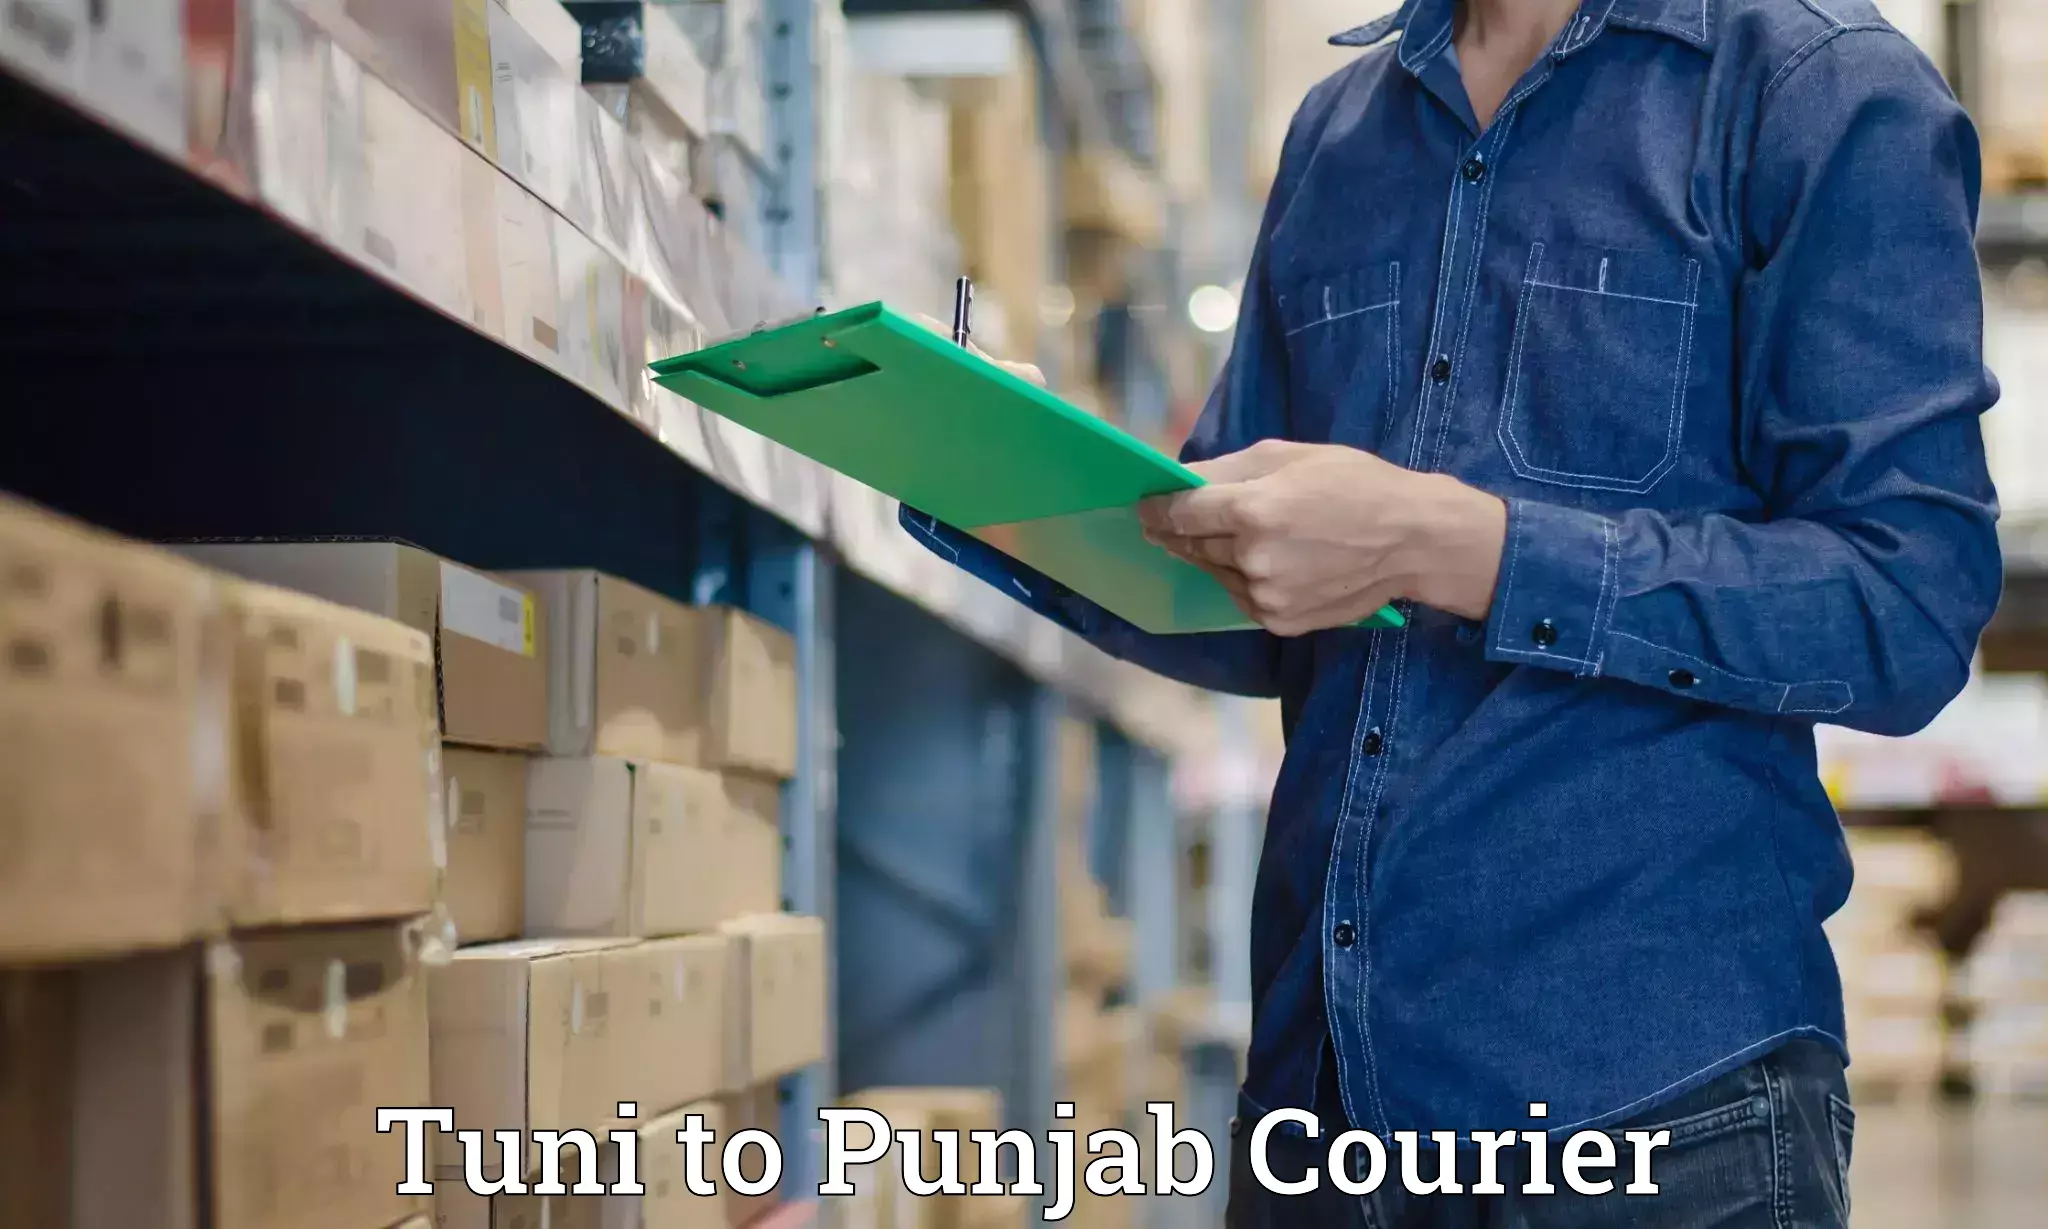 Luggage shipment processing in Tuni to Punjab